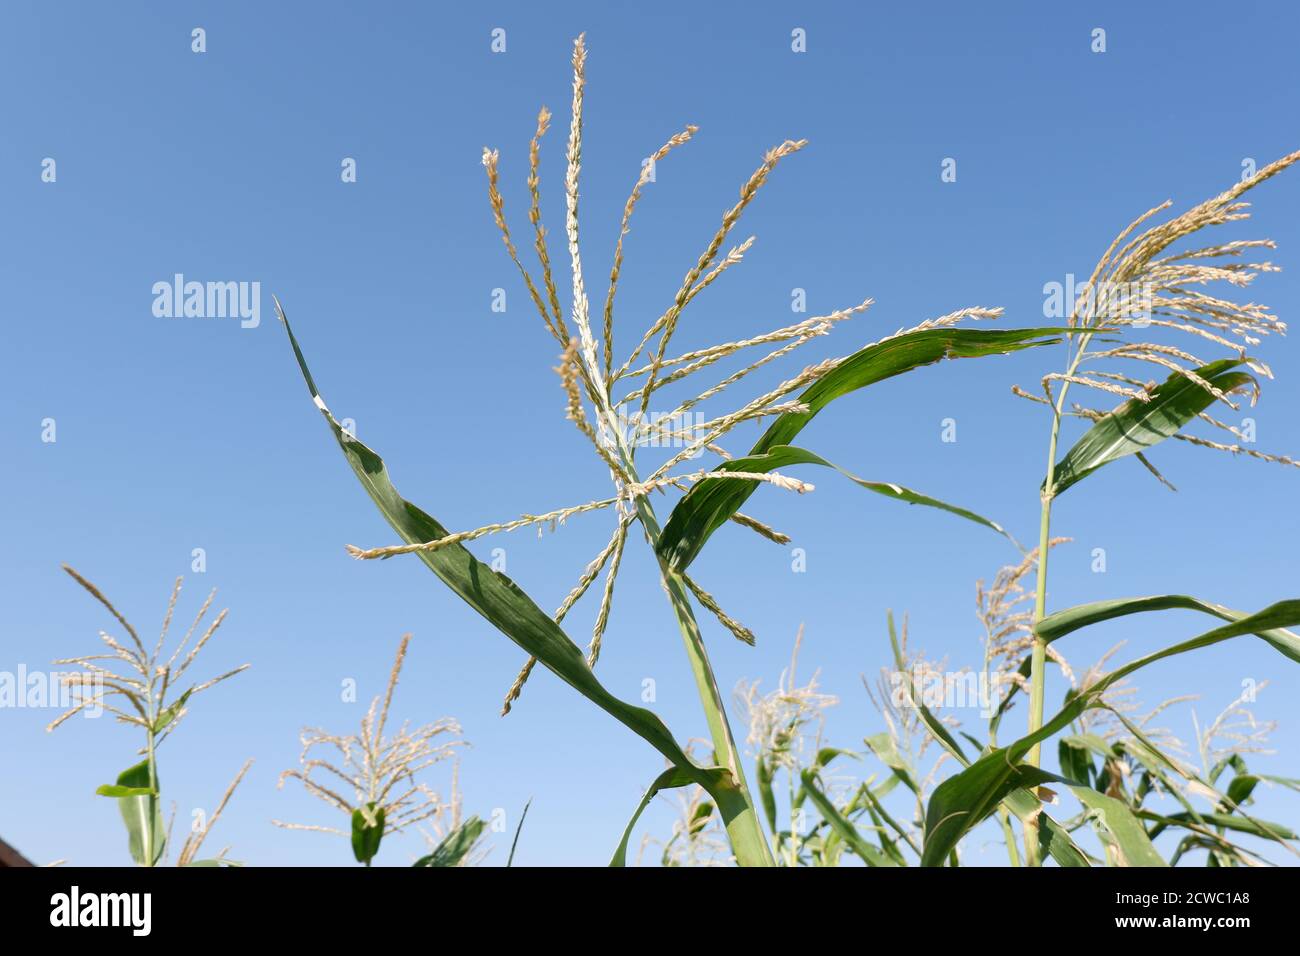 Heads of Corn plants over horizon Stock Photo